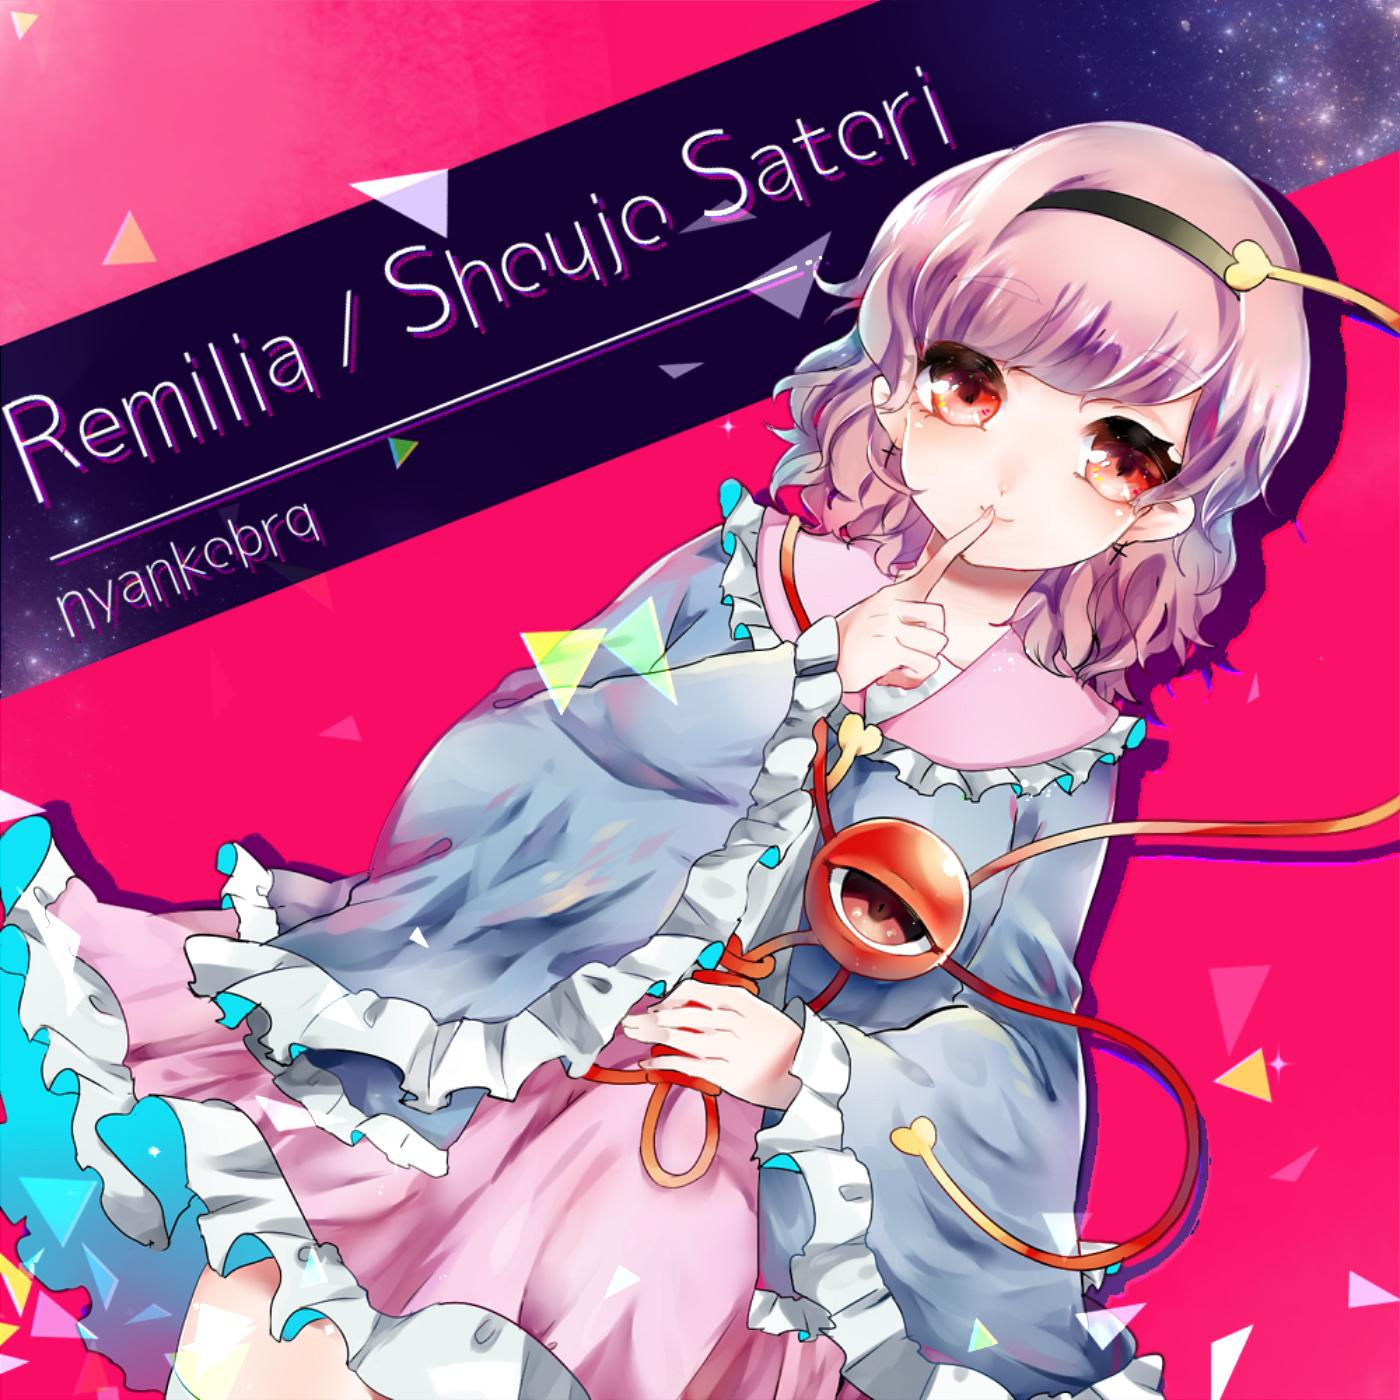 Remilia/Shoujo Satori专辑